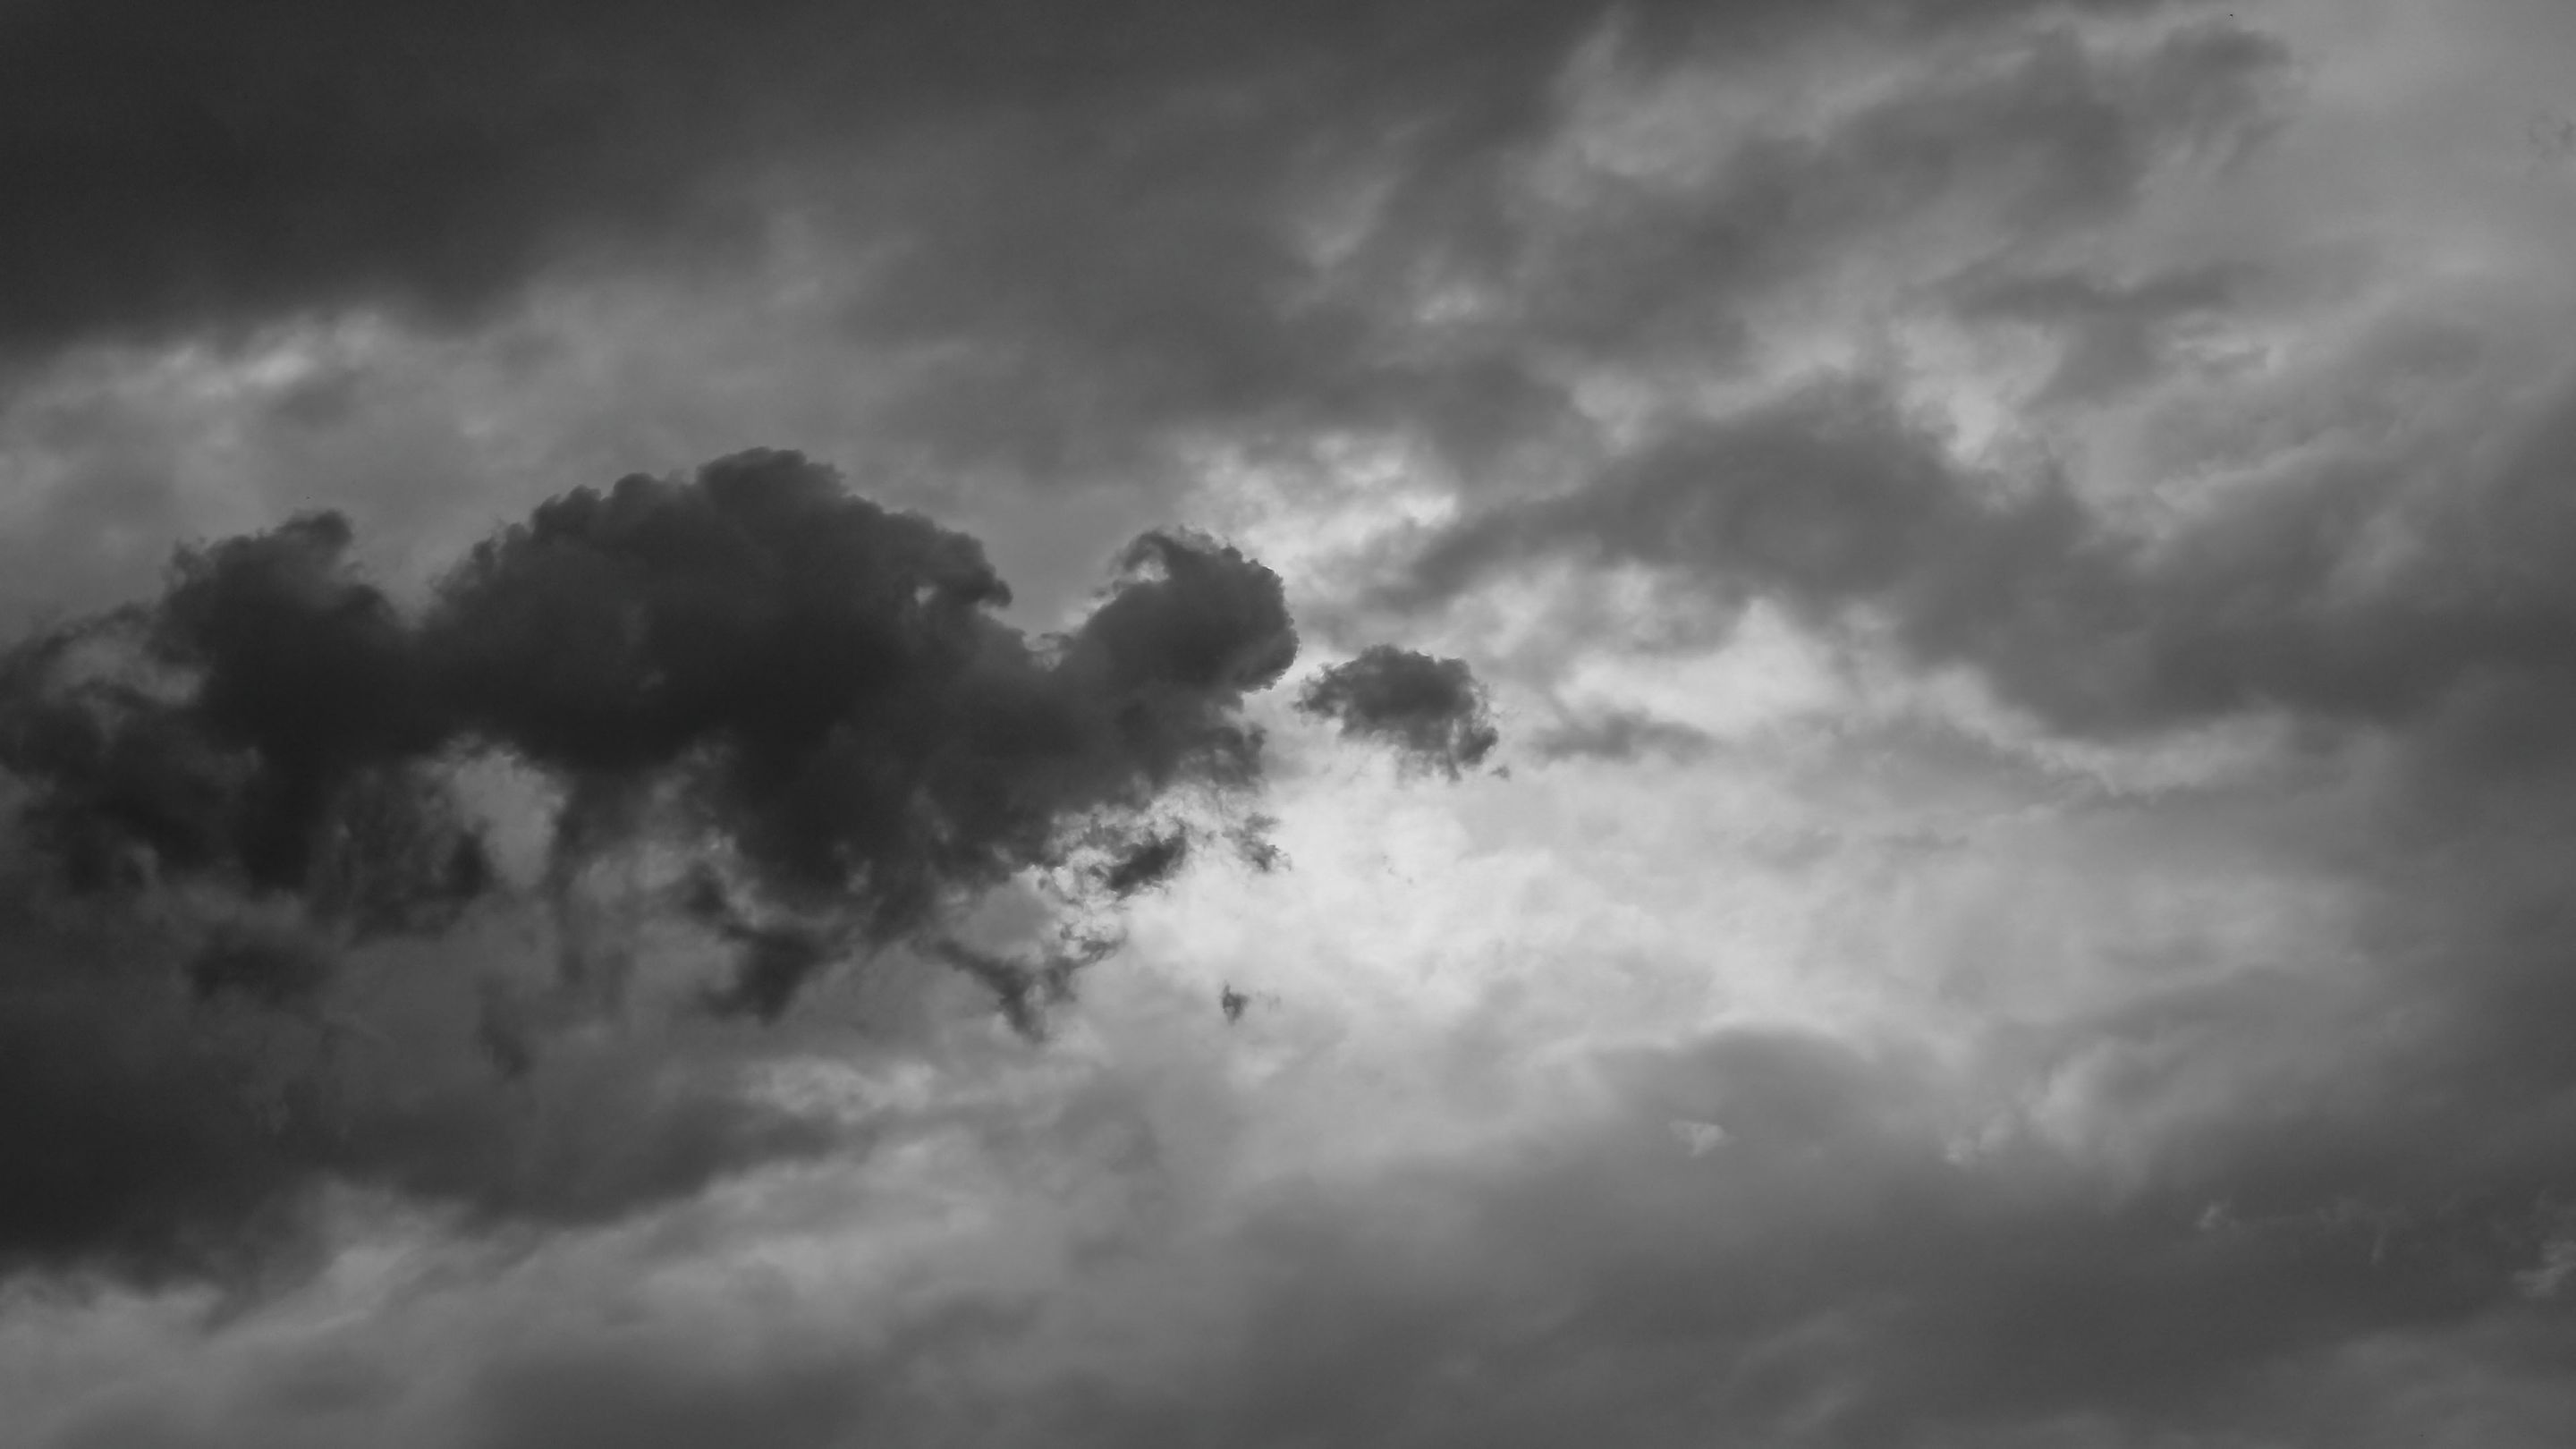  Faszinierende Hintergrundbild 2880x1620. Hintergrundbilder. Sturmwolken vor einem Gewitter